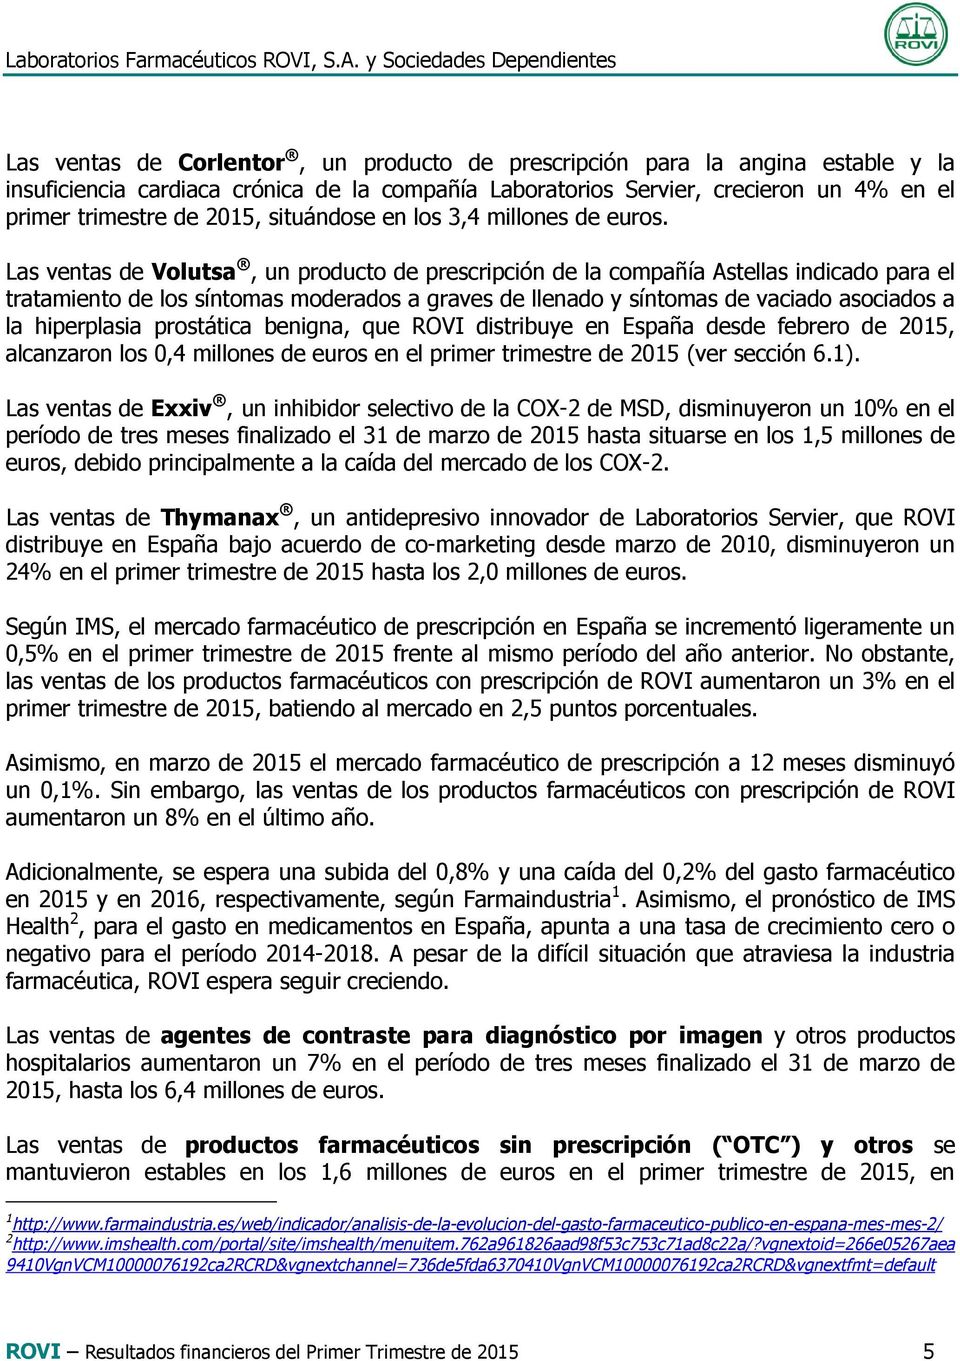 Las ventas de Volutsa, un producto de prescripción de la compañía Astellas indicado para el tratamiento de los síntomas moderados a graves de llenado y síntomas de vaciado asociados a la hiperplasia